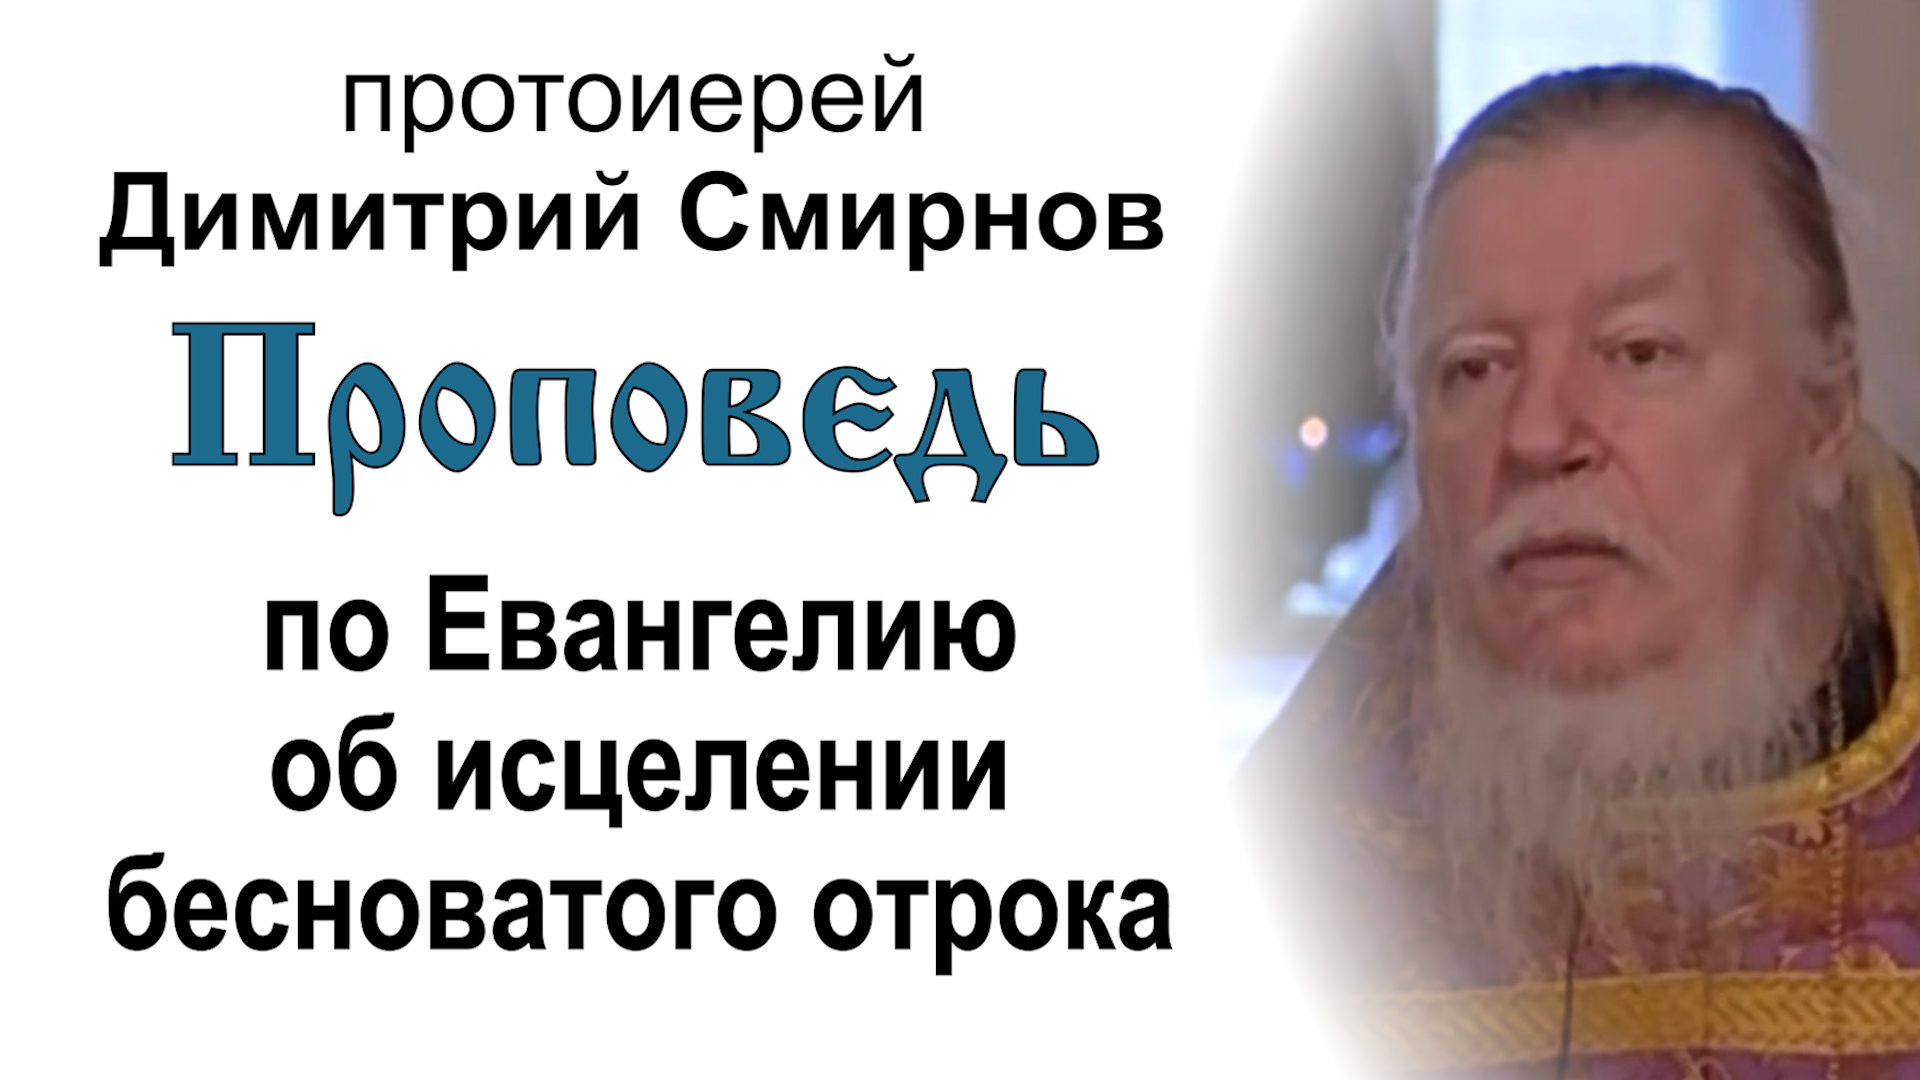 Проповедь по Евангелию об исцелении бесноватого отрока (2006.04.02). Протоиерей Димитрий Смирнов